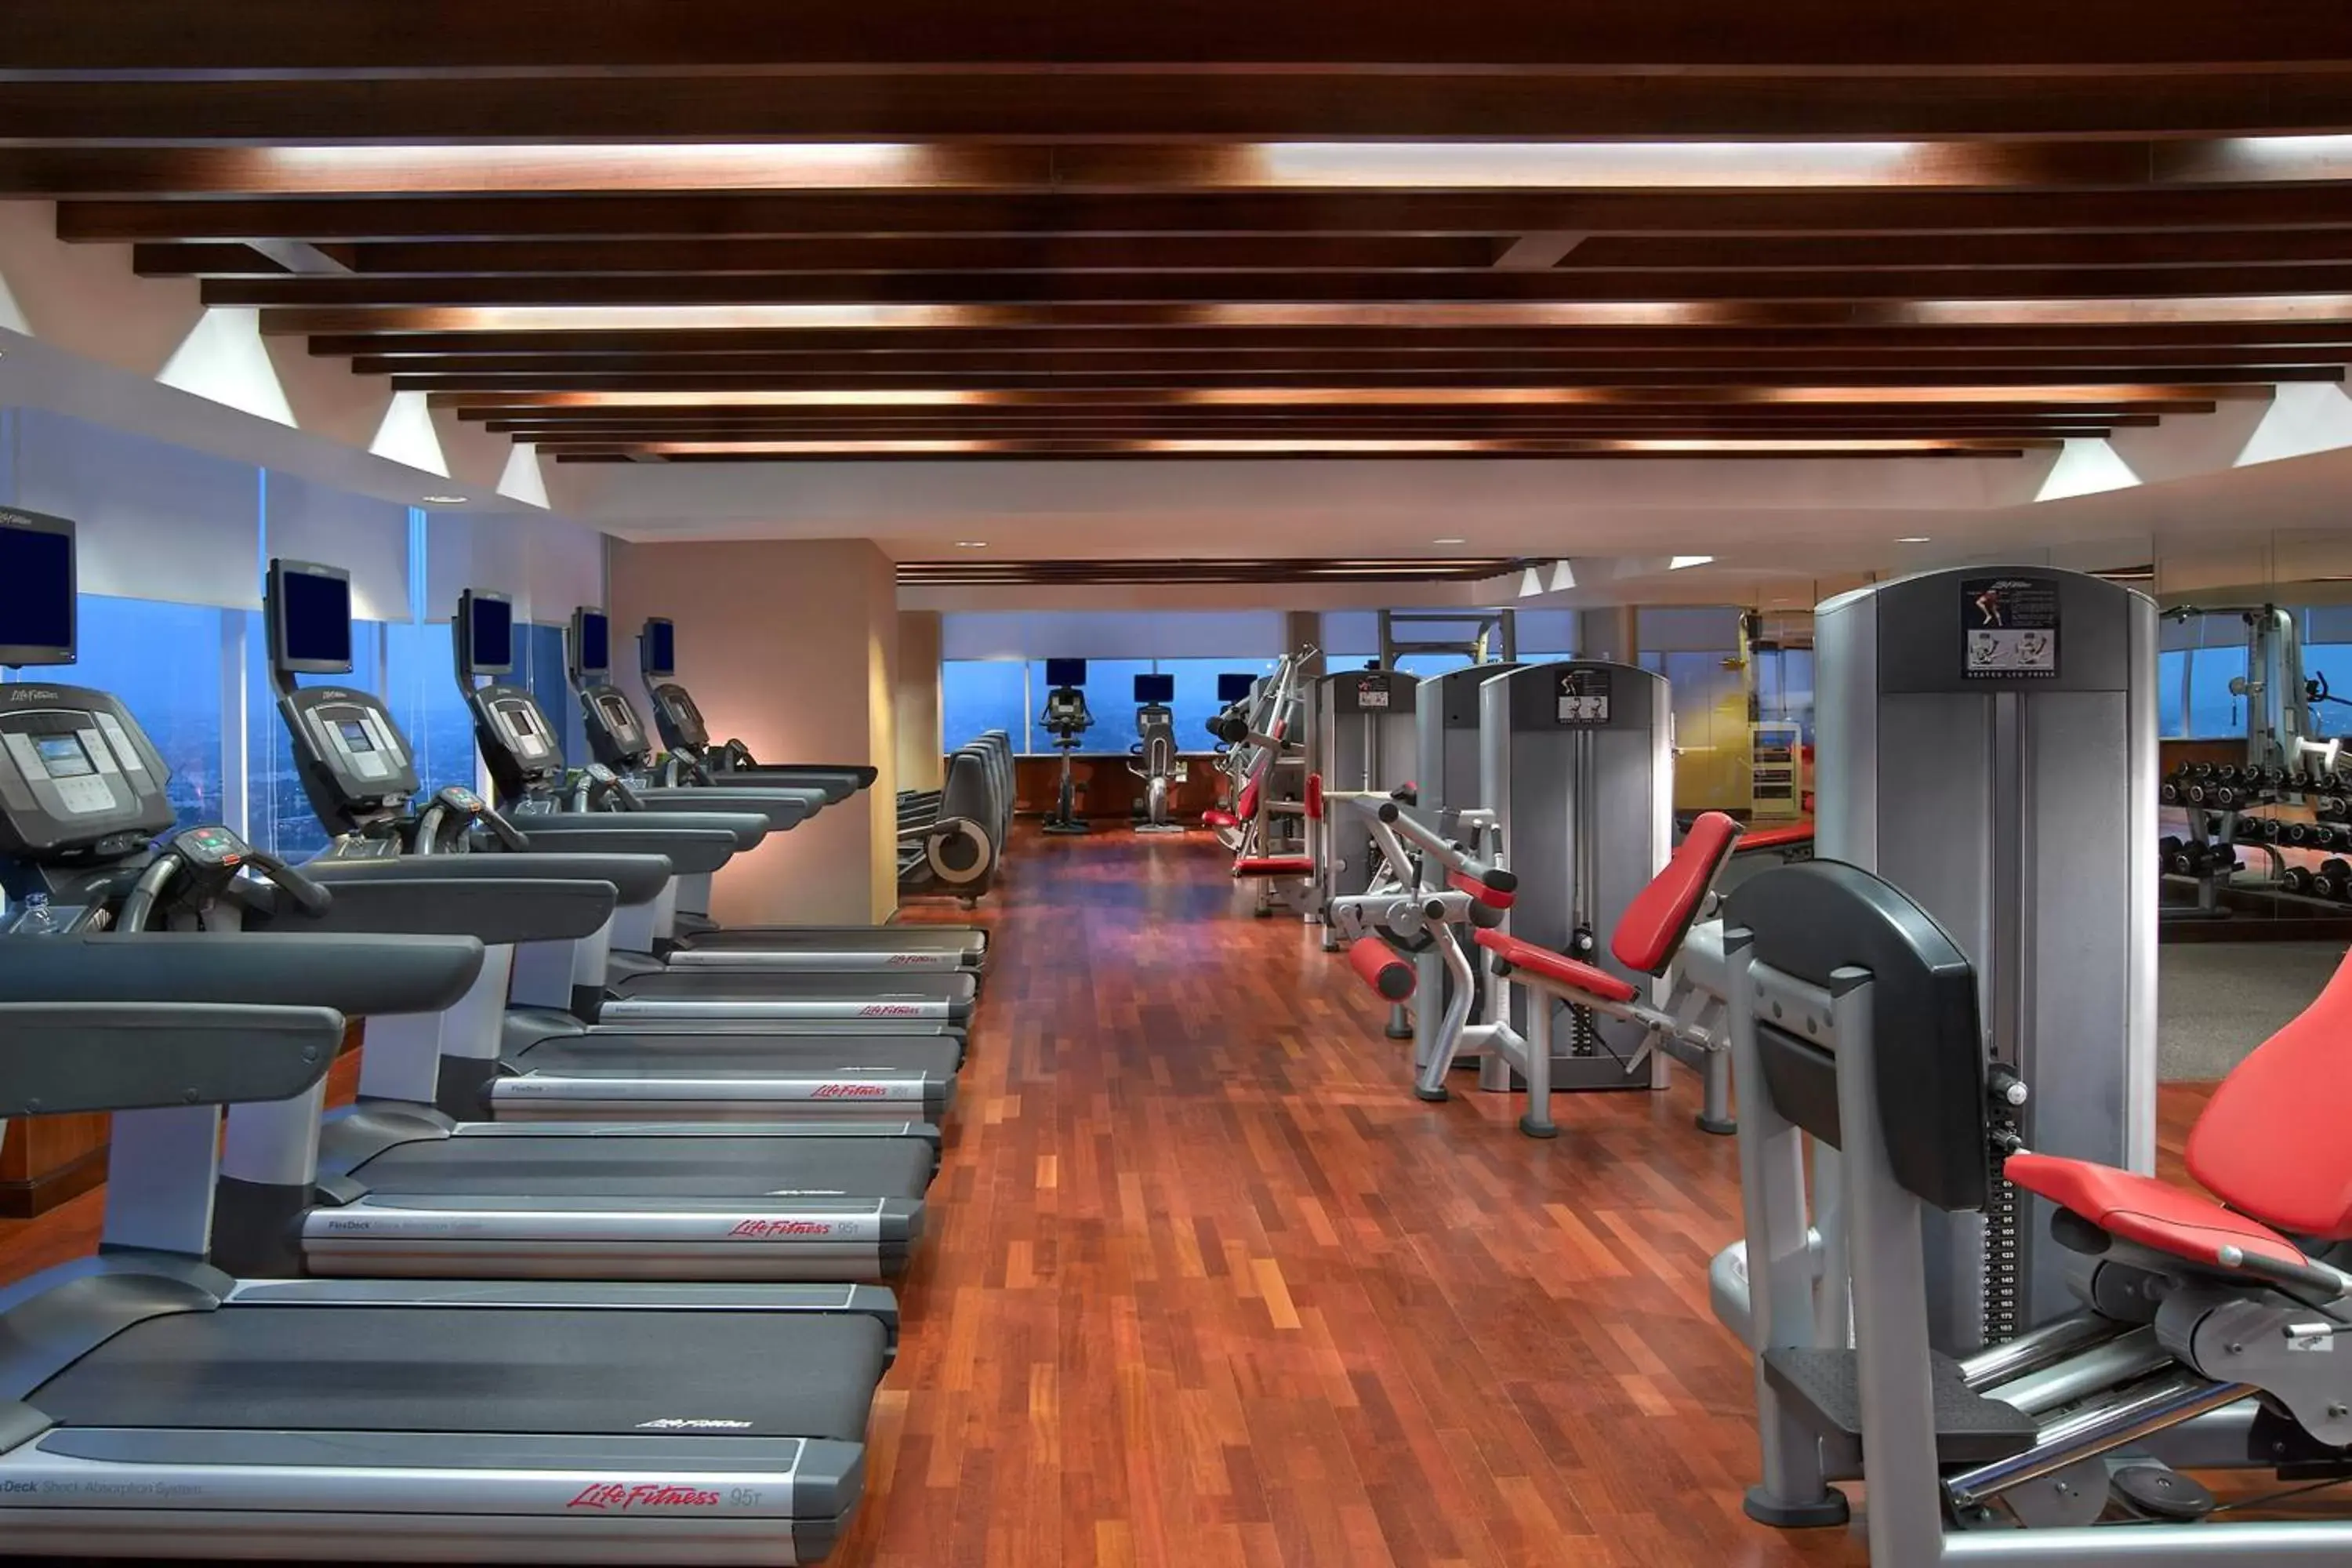 Fitness centre/facilities, Fitness Center/Facilities in JW Marriott Hotel Medan